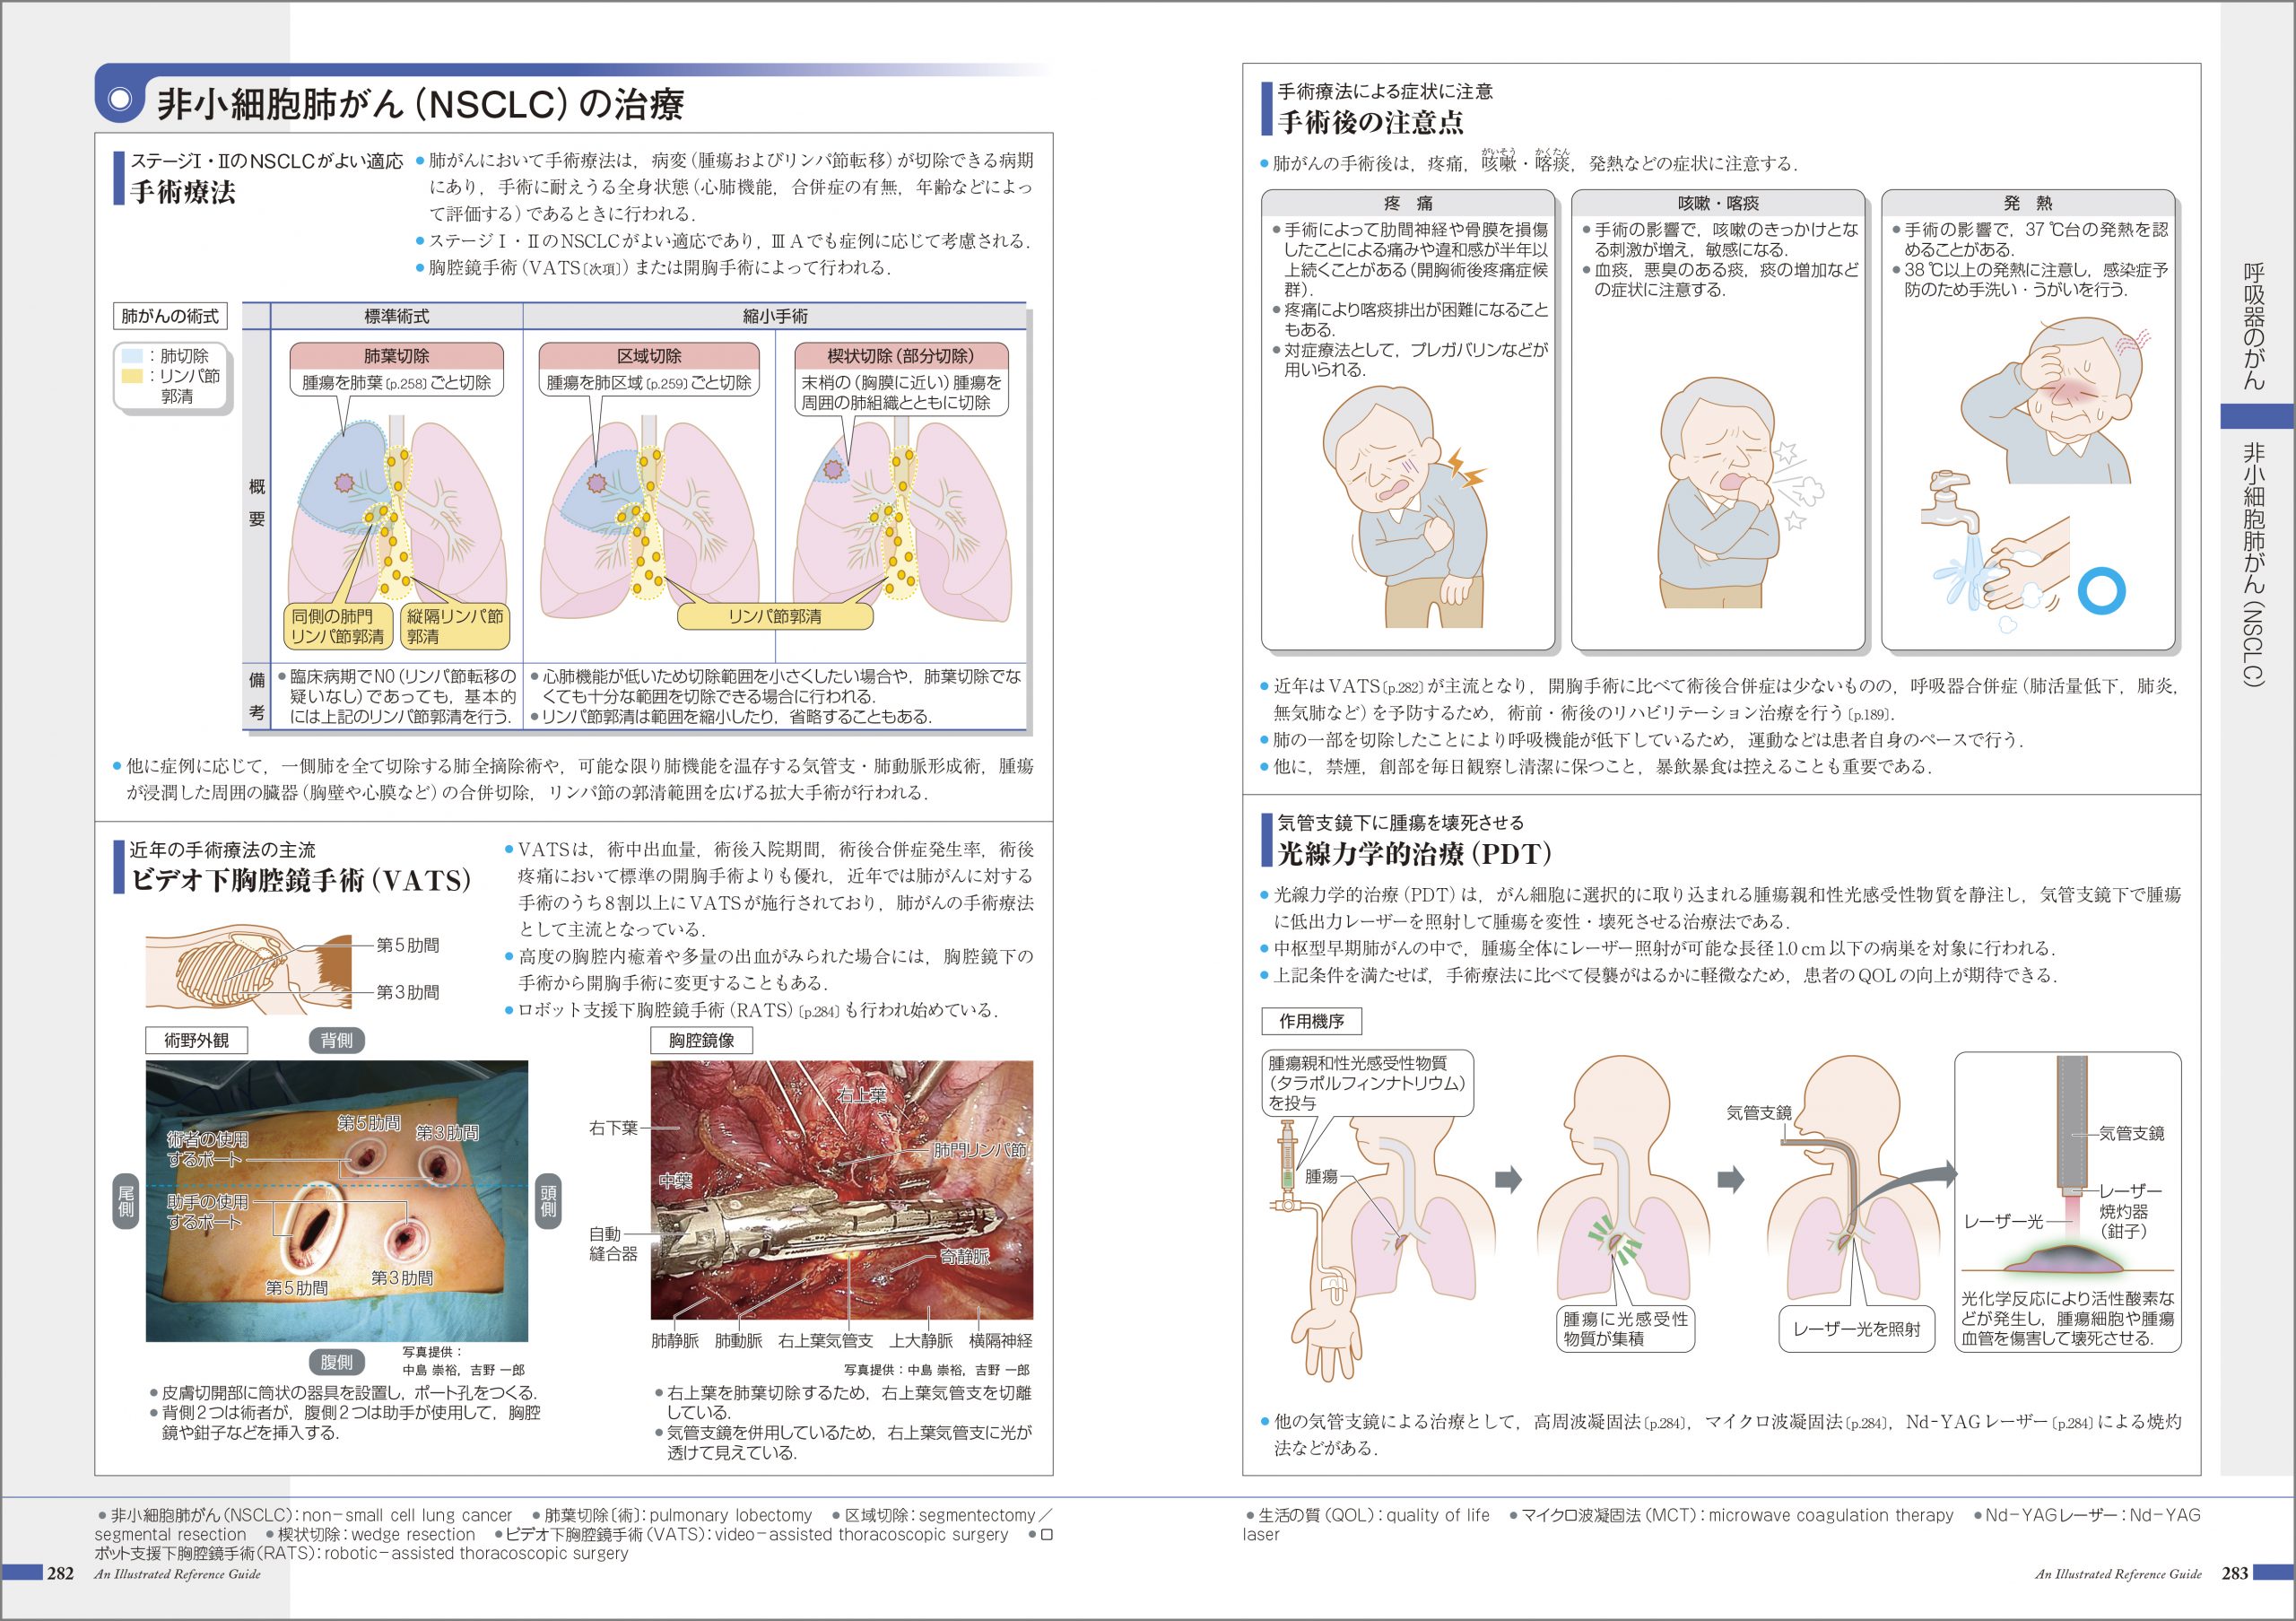 『がんがみえる』 紙面イメージ
VATS 胸腔鏡手術
光線力学的治療